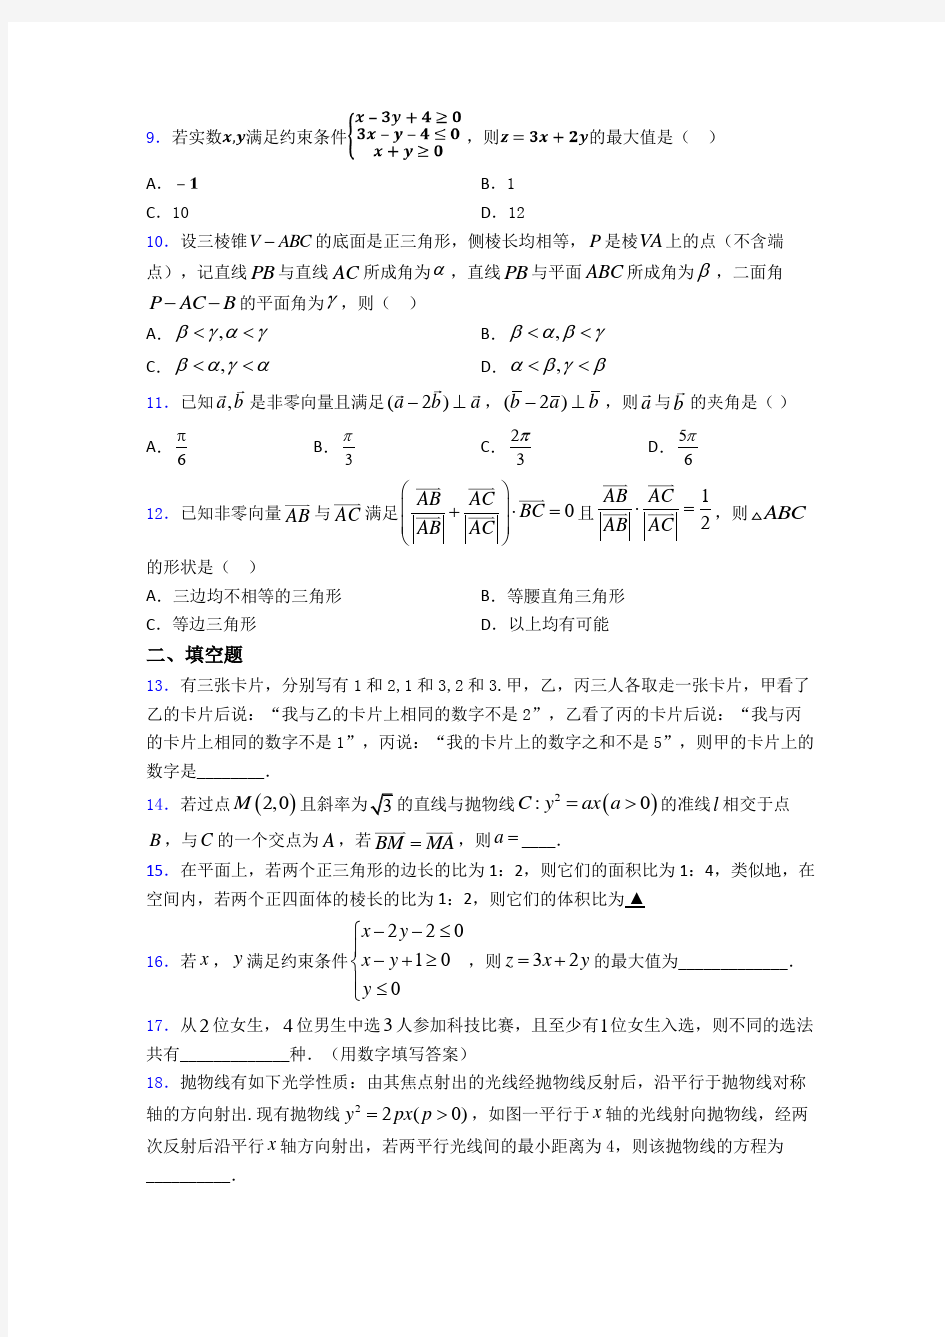 【典型题】数学高考试题(含答案)